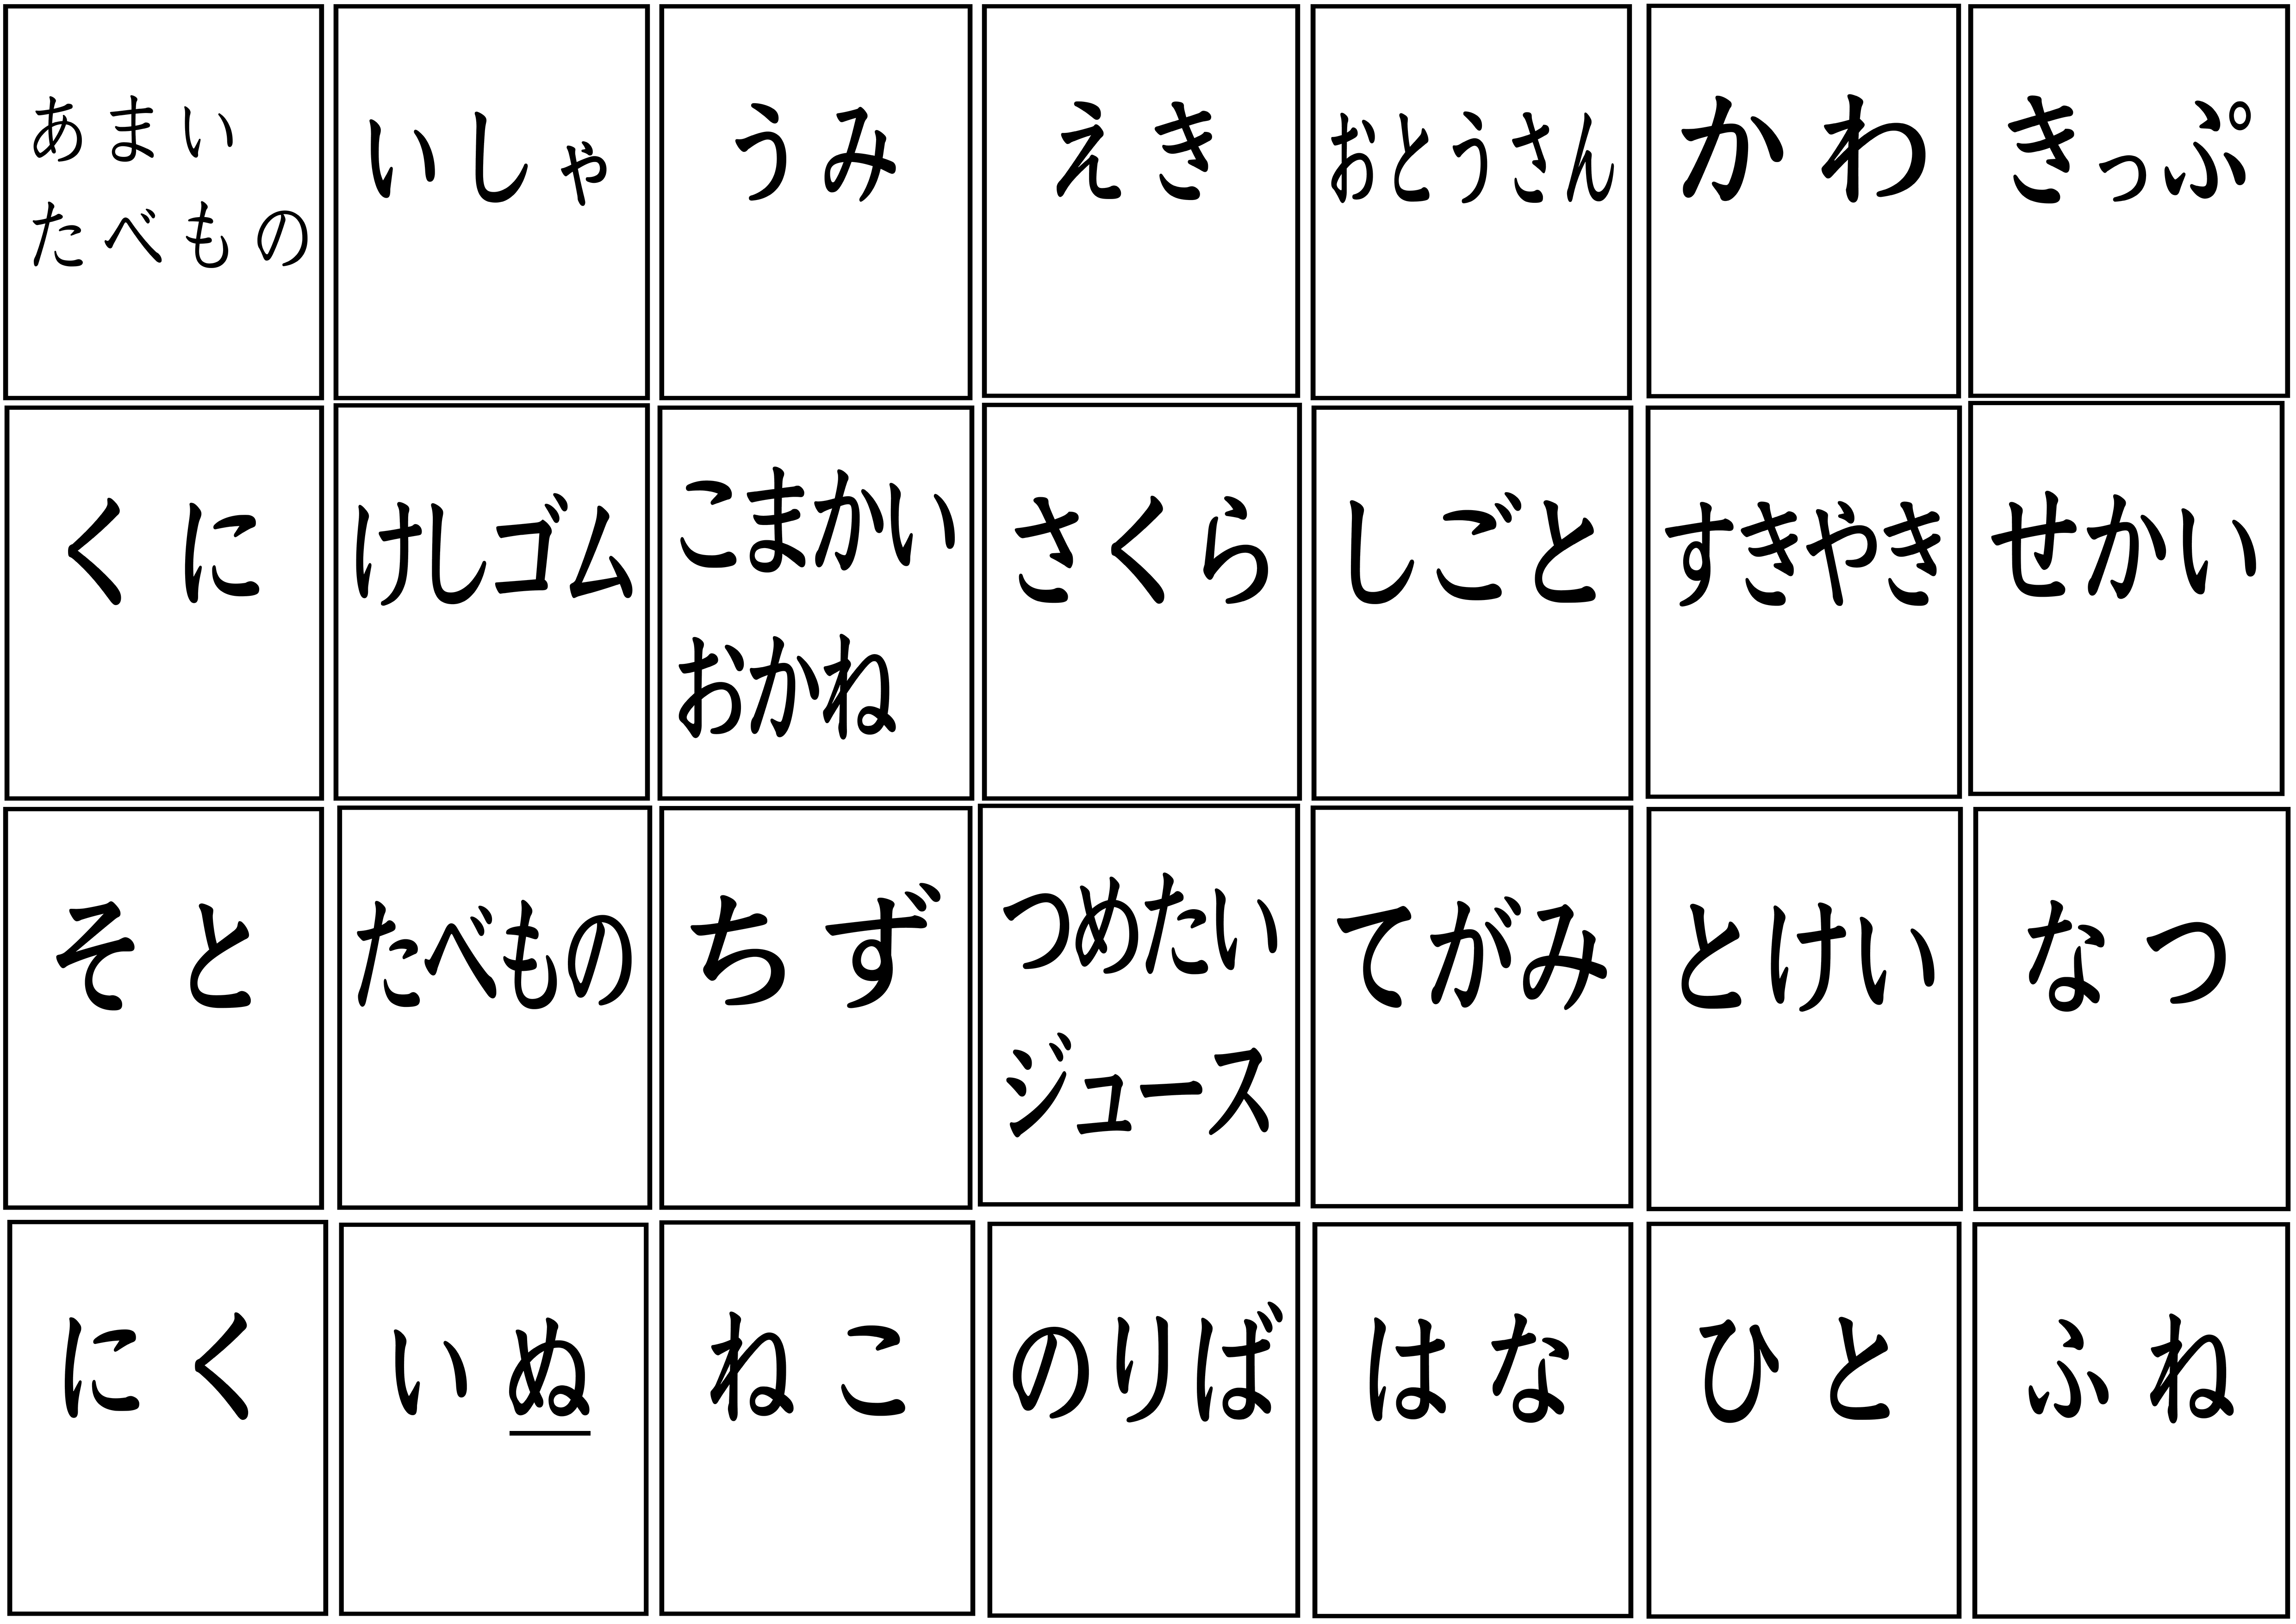 日本語教師学習教材【カルタゲーム】